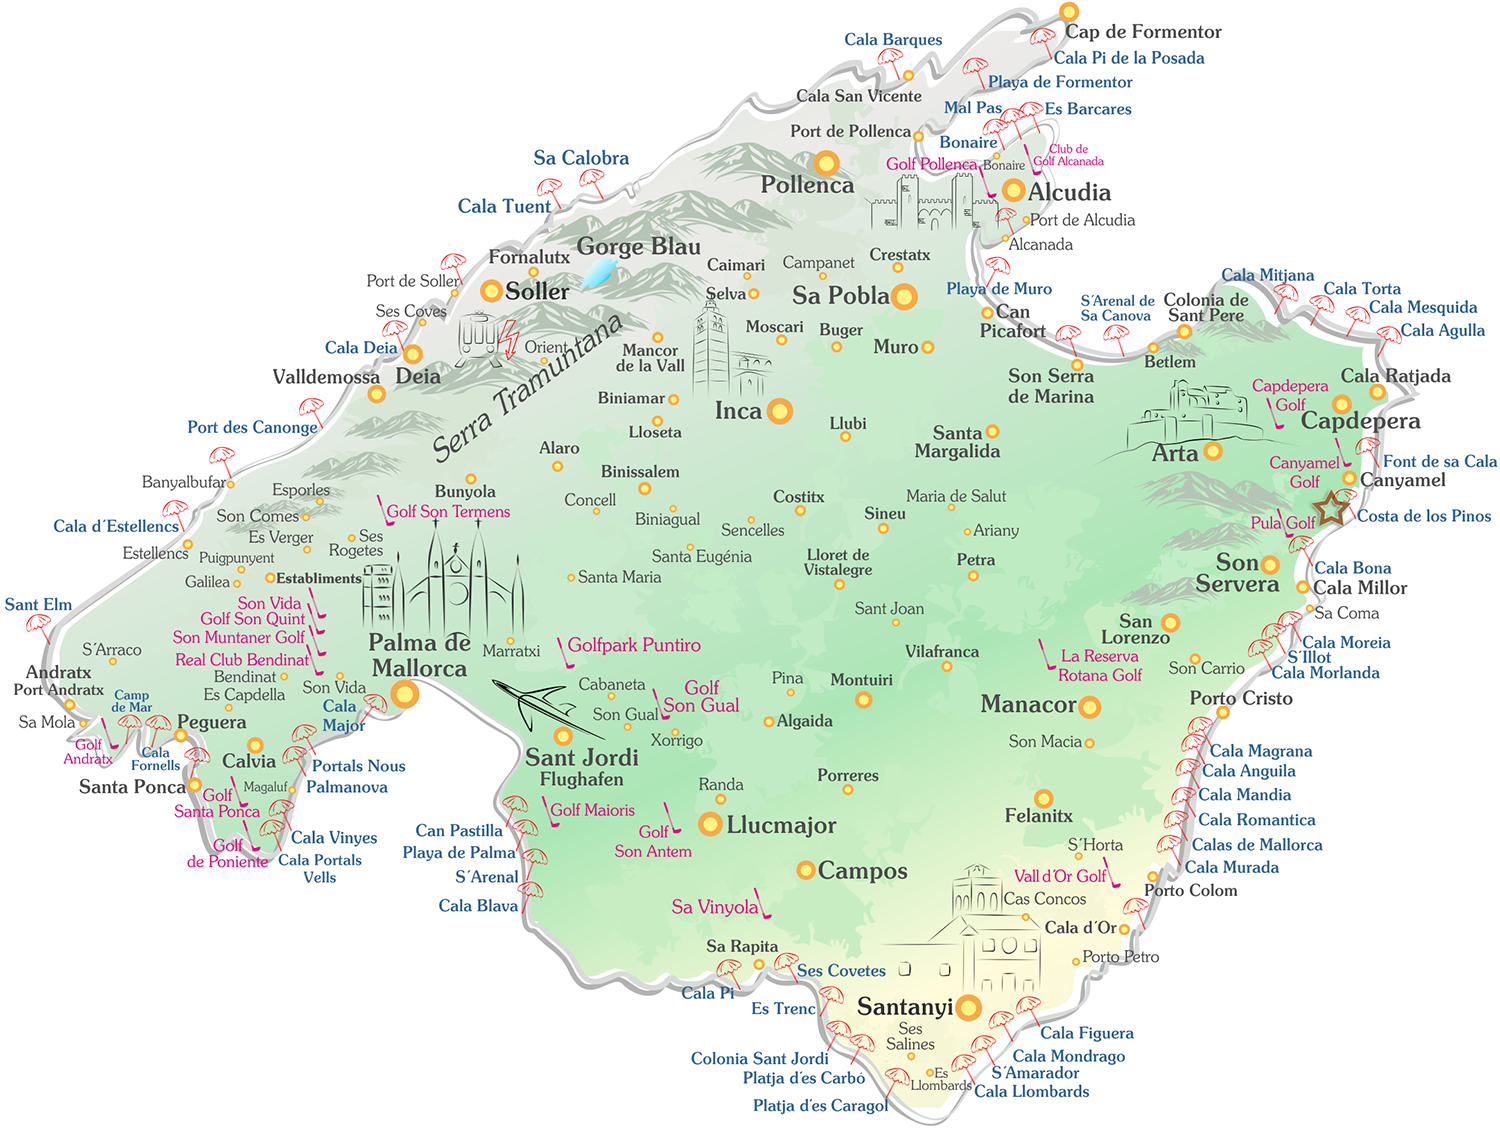 Costa de los Pinos auf der Mallorca Karte